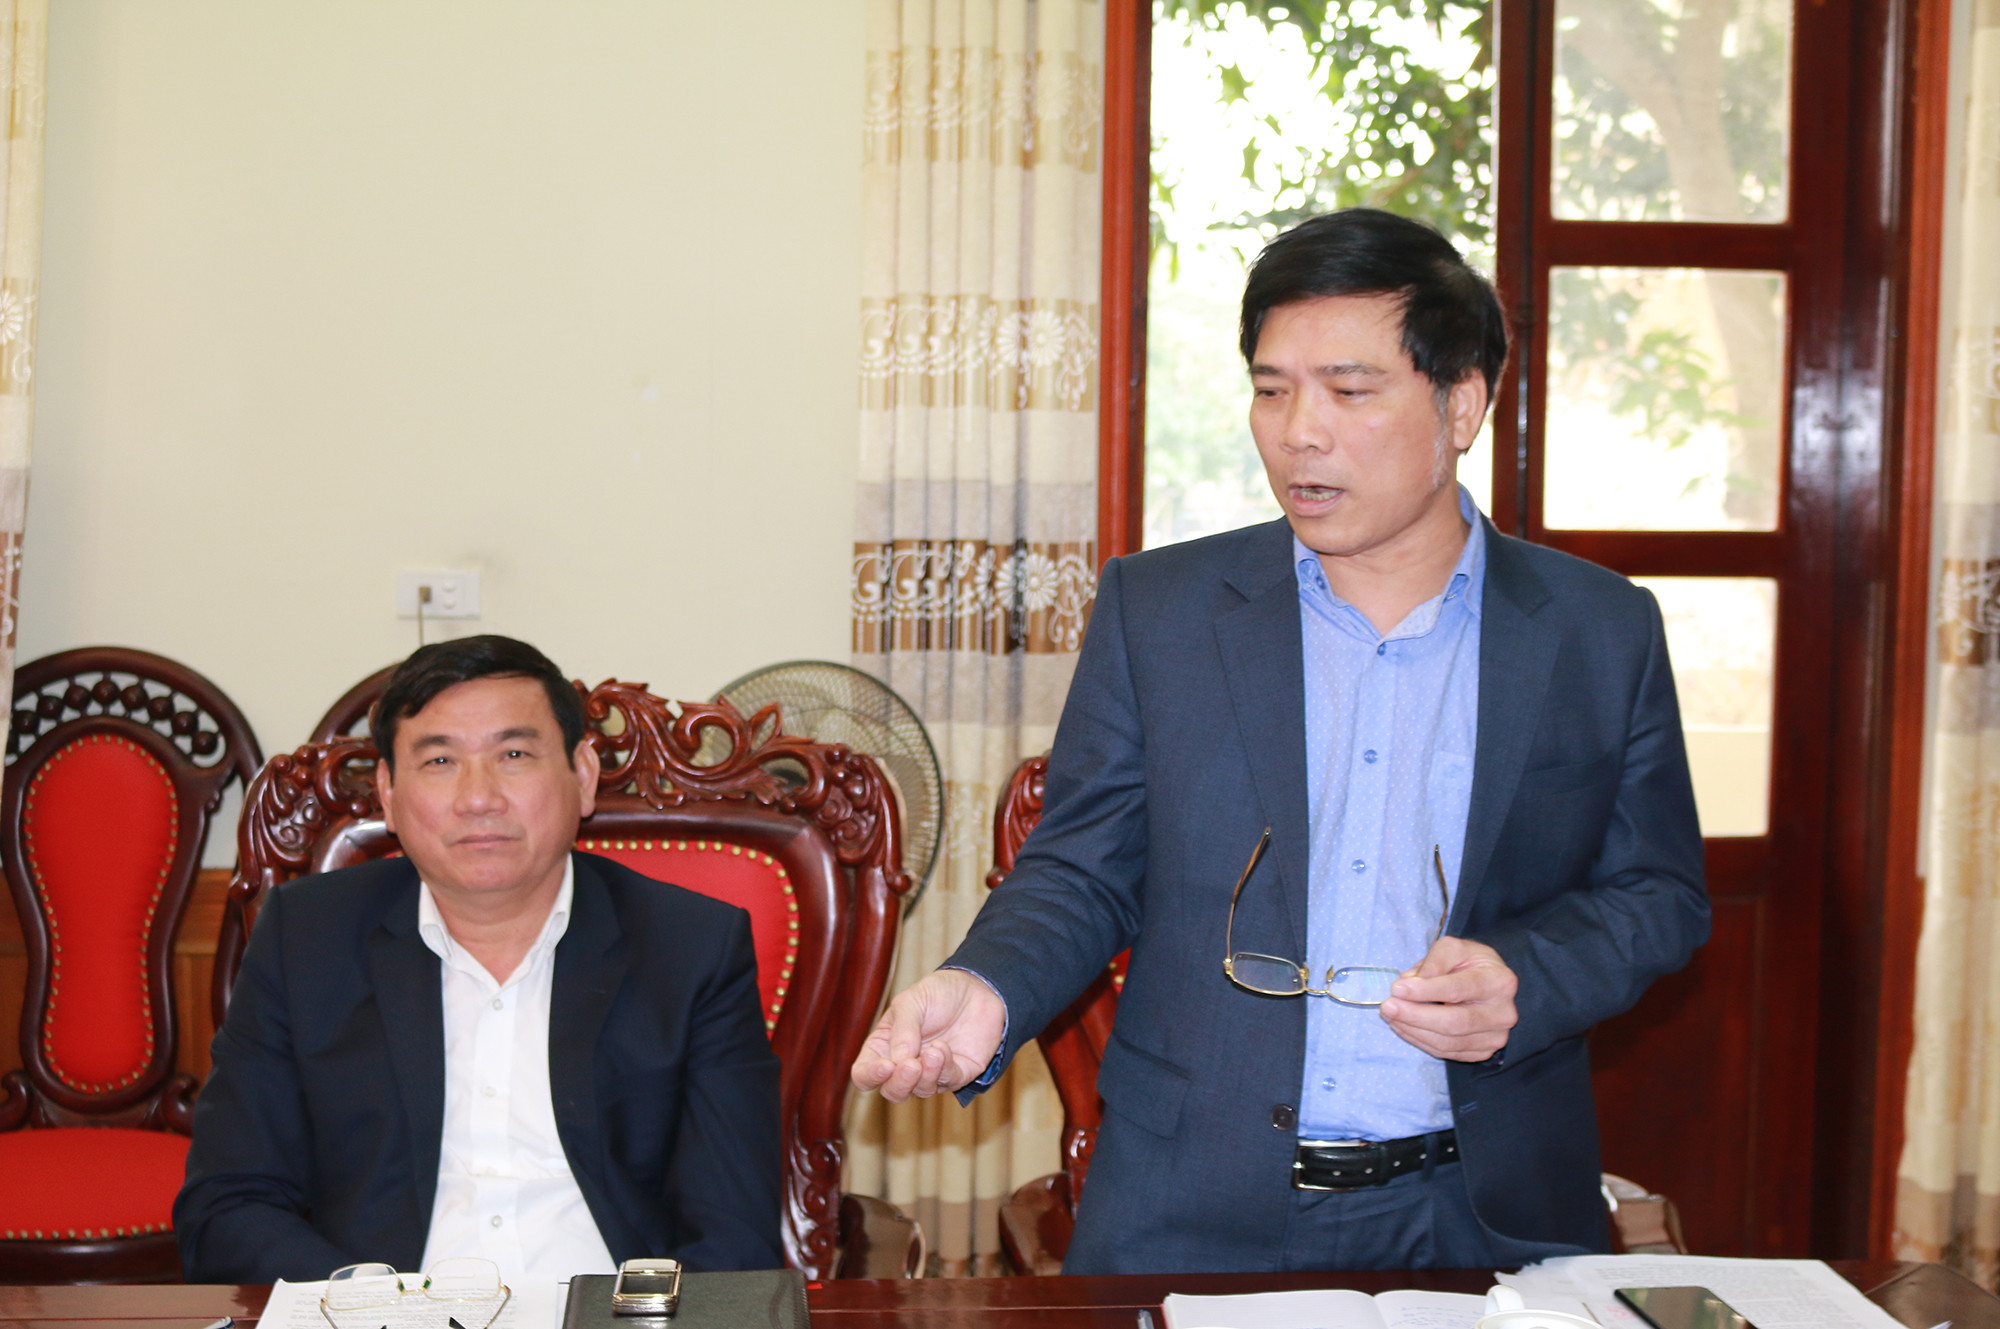 Đồng chí Nguyễn Hoài An - Phó Bí thư Thành ủy, Chủ tịch UBND TP Vinh phát biểu tại cuộc họp. Ảnh: Đức Anh